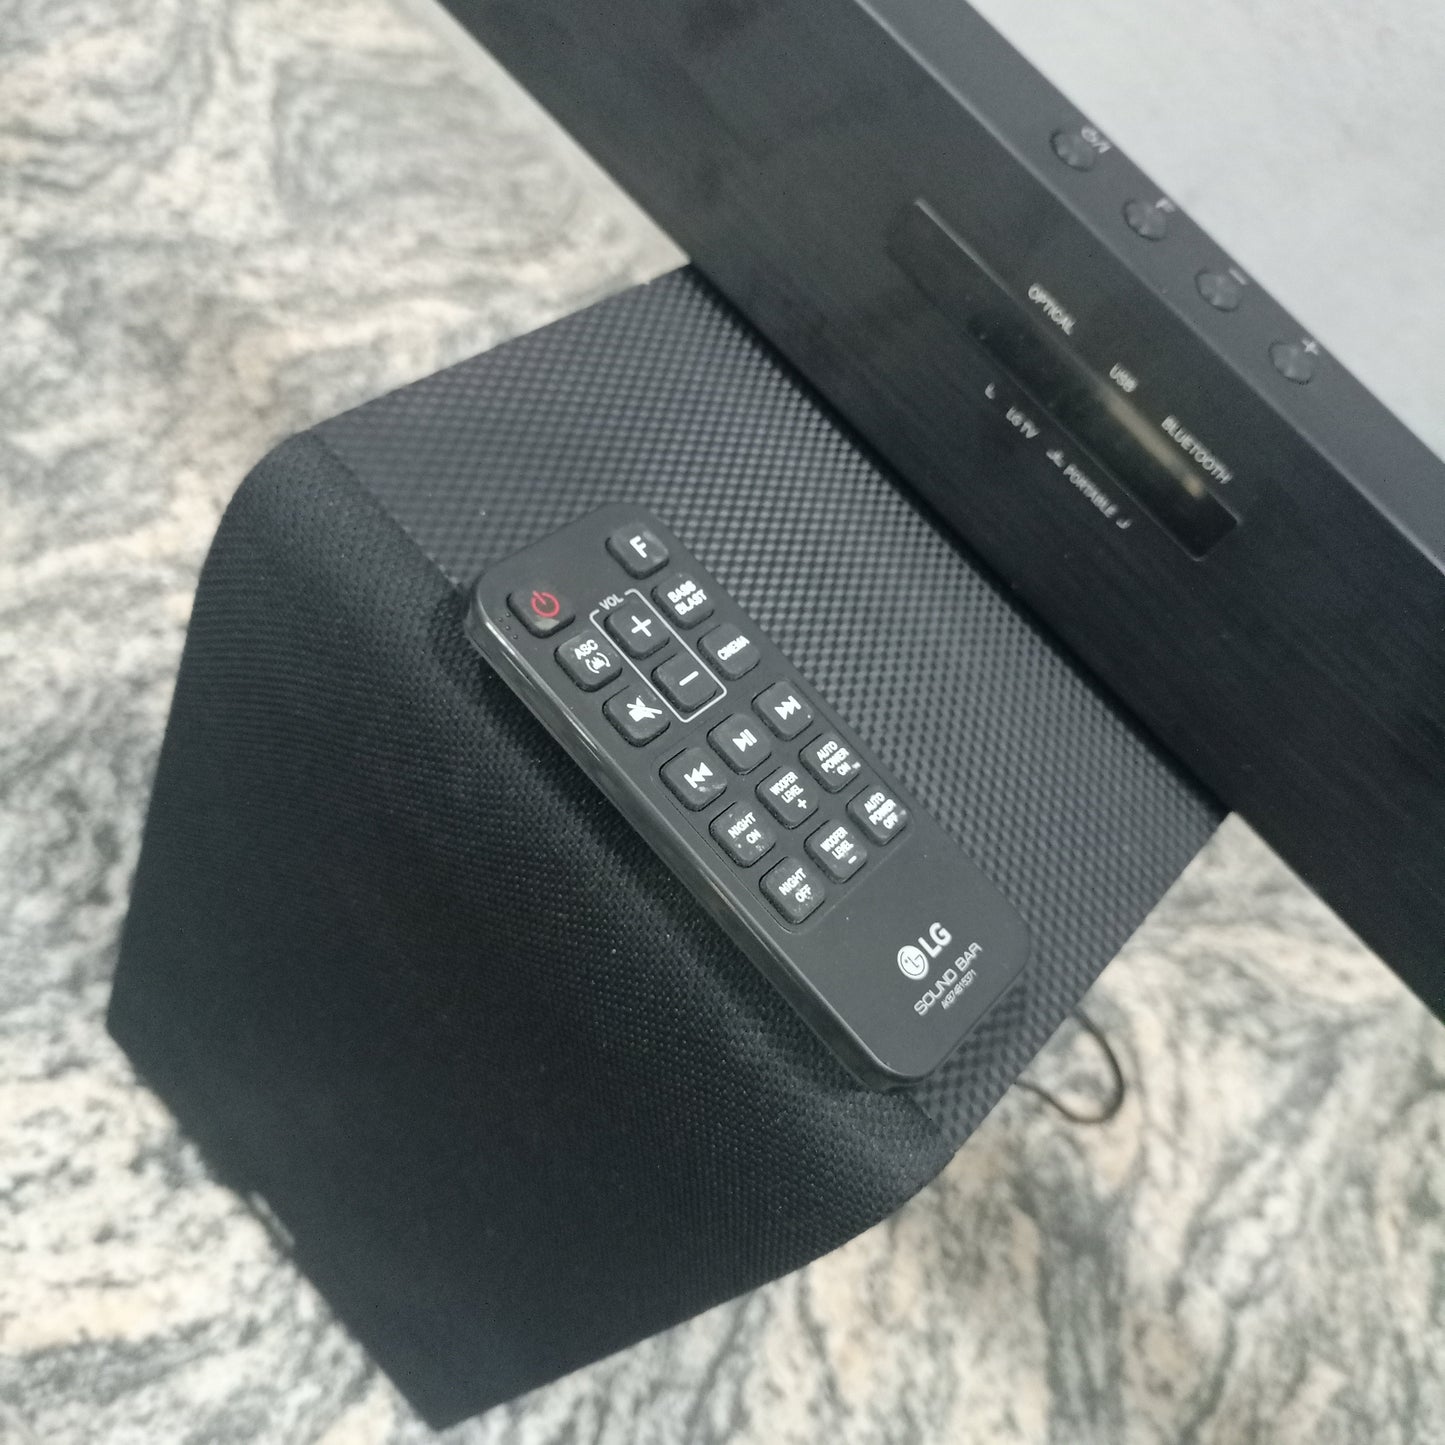 LG SJ3 2.1Ch 300W Bluetooth Sound Bar with Wireless Subwoofer - Brand New